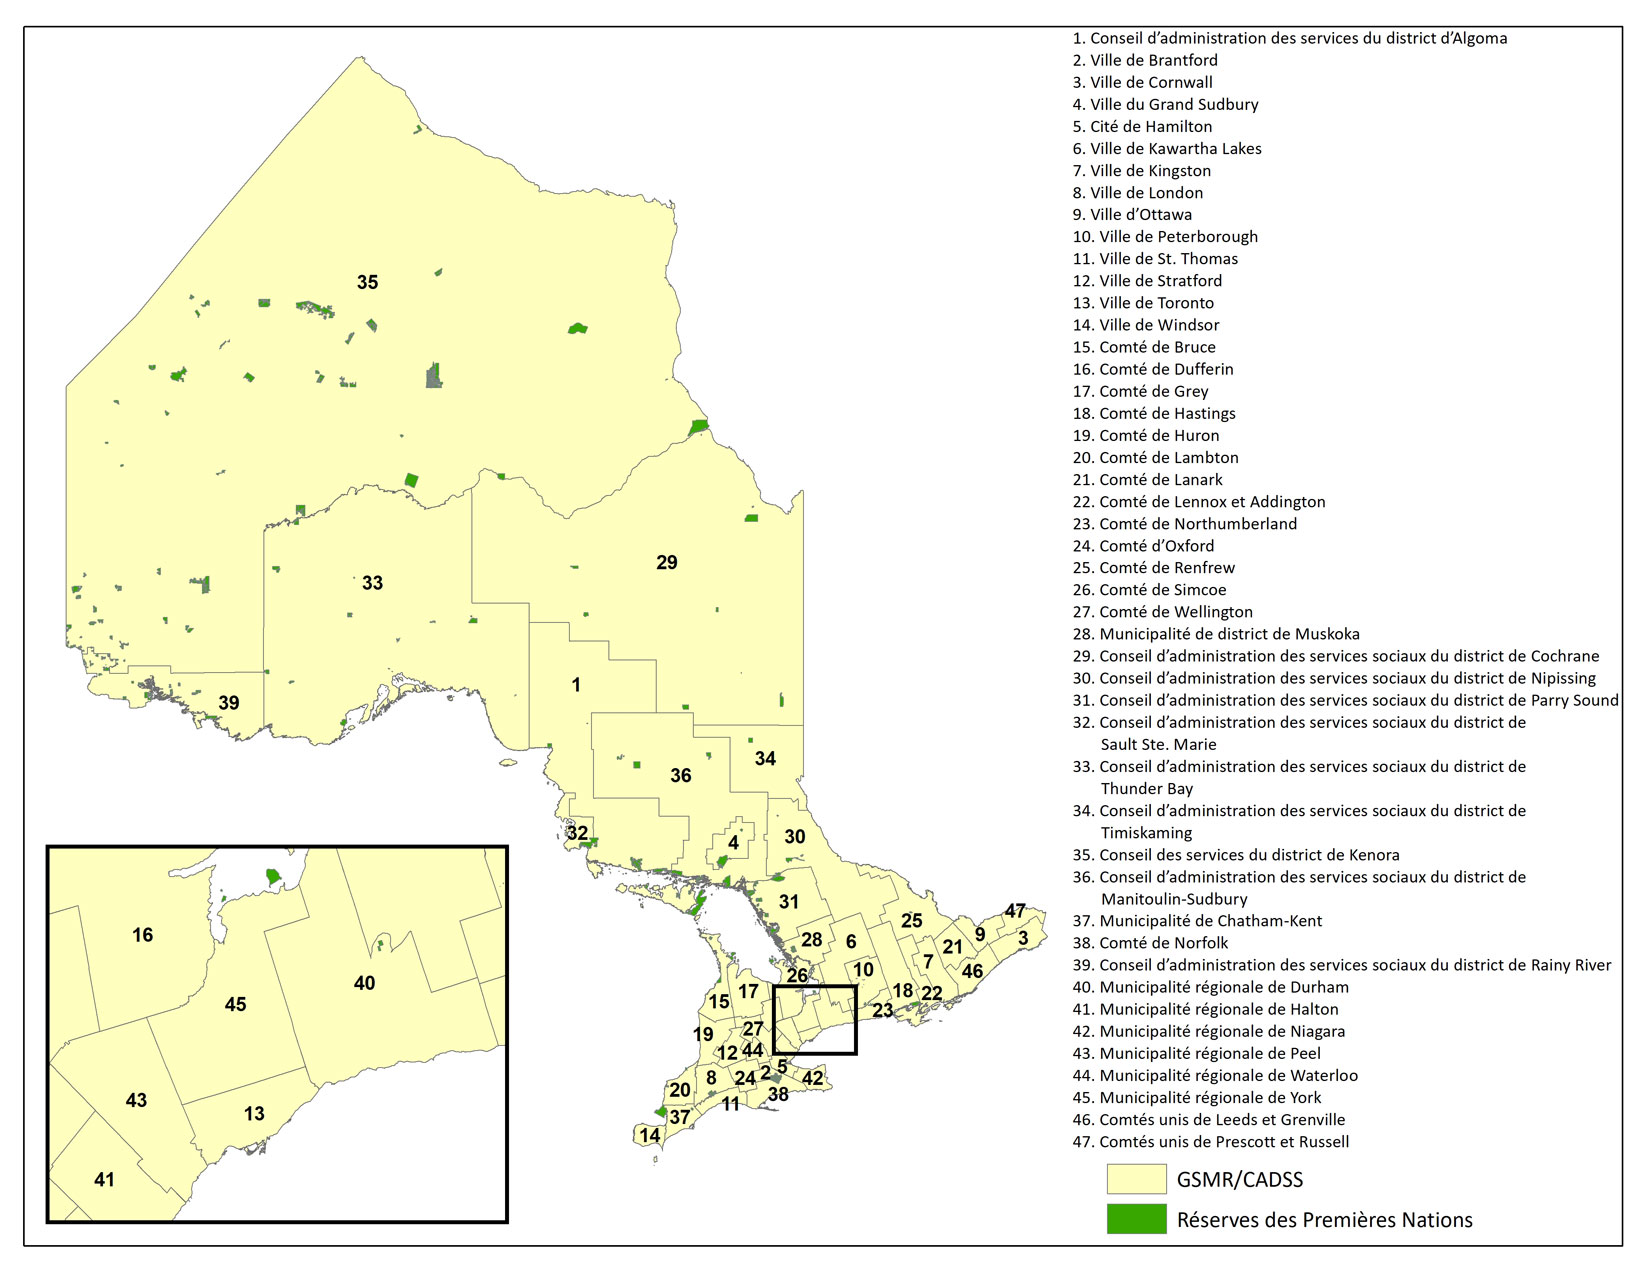 Carte de l’Ontario montrant les emplacements des gestionnaires des services municipaux regroupés et conseils d’administration de district des services sociaux (<abbr>GSMR<abbr>/</abbr>CADSS</abbr>) en Ontario :